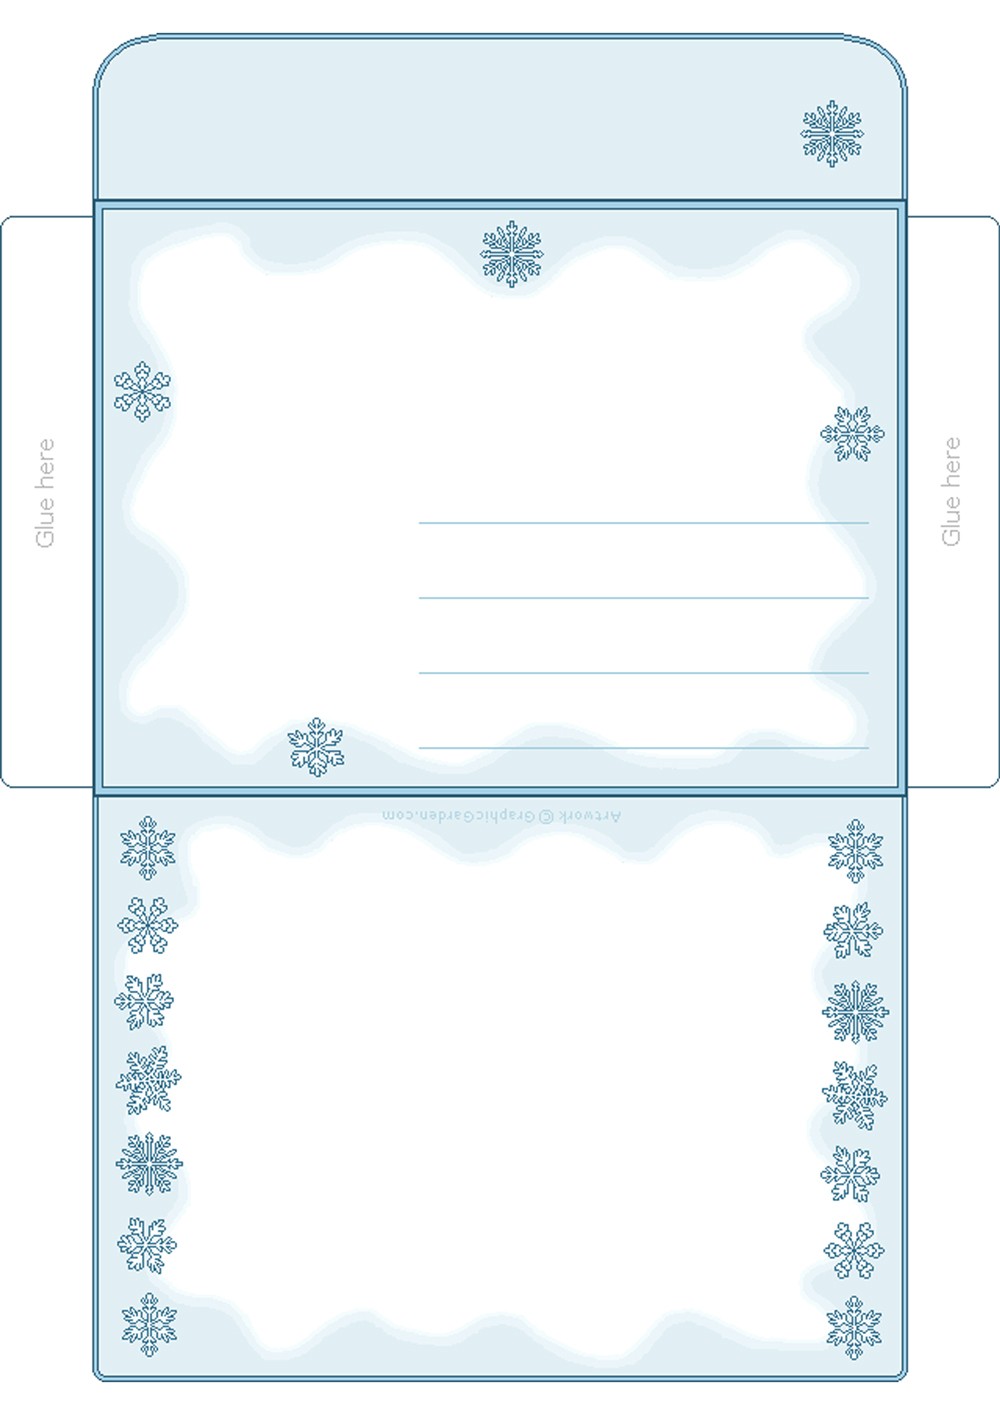 красивый конверт для Деда Мороза шаблон для вырезания 10